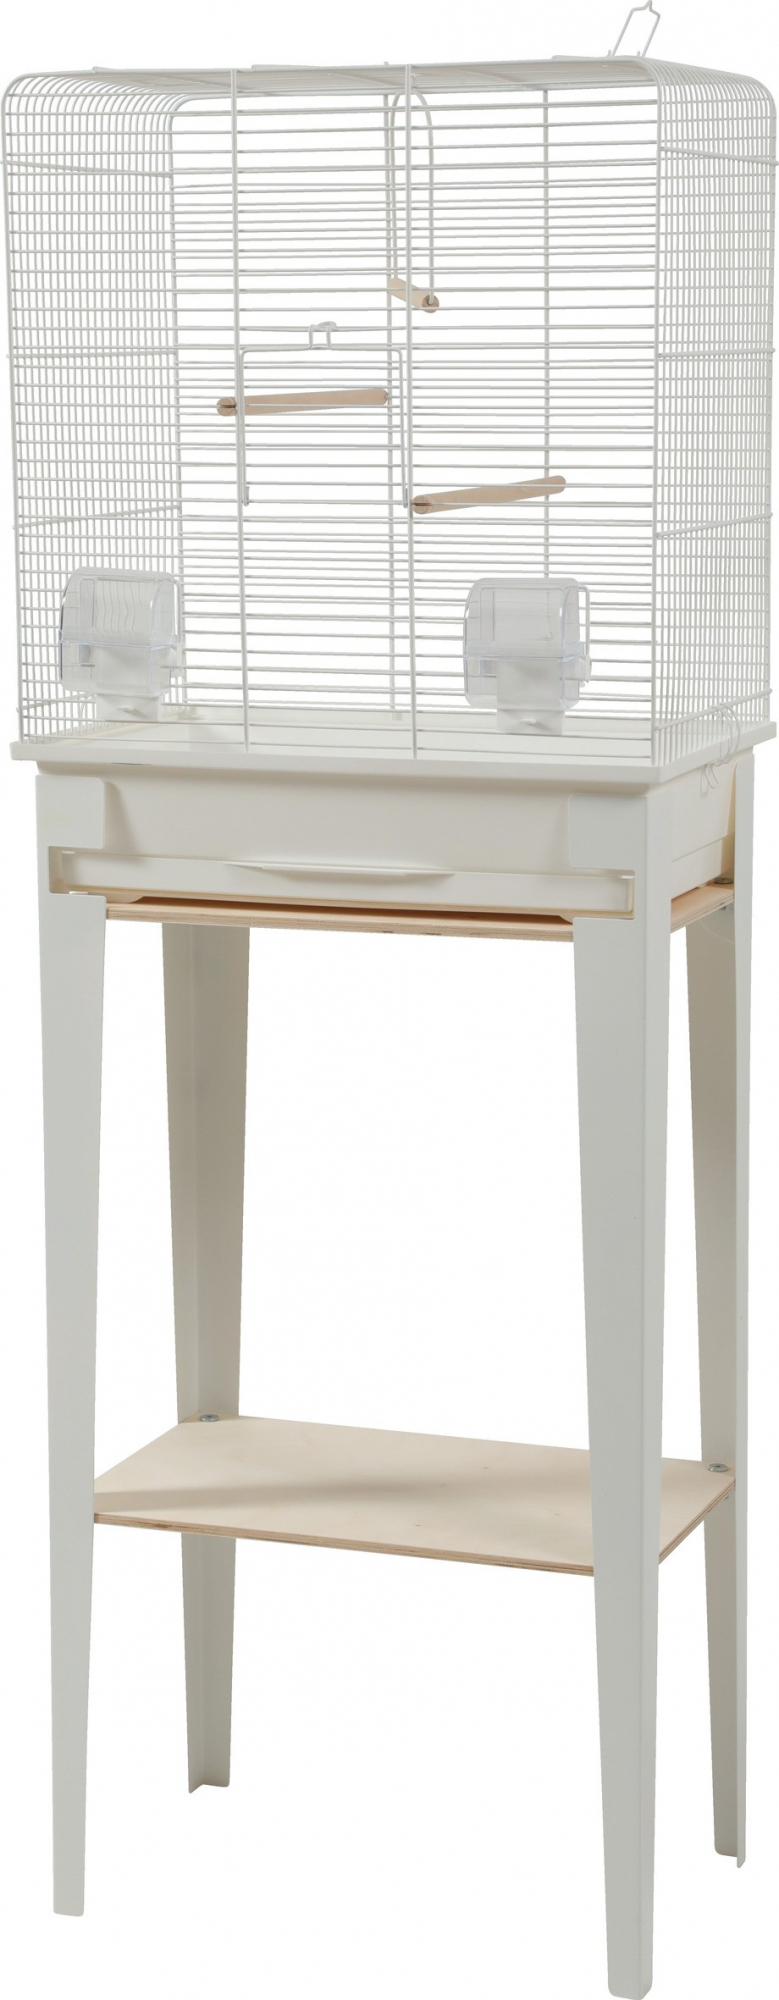 Vogelkäfig mit Füßen Chic Loft - weiß - 3 Größen verfügbar